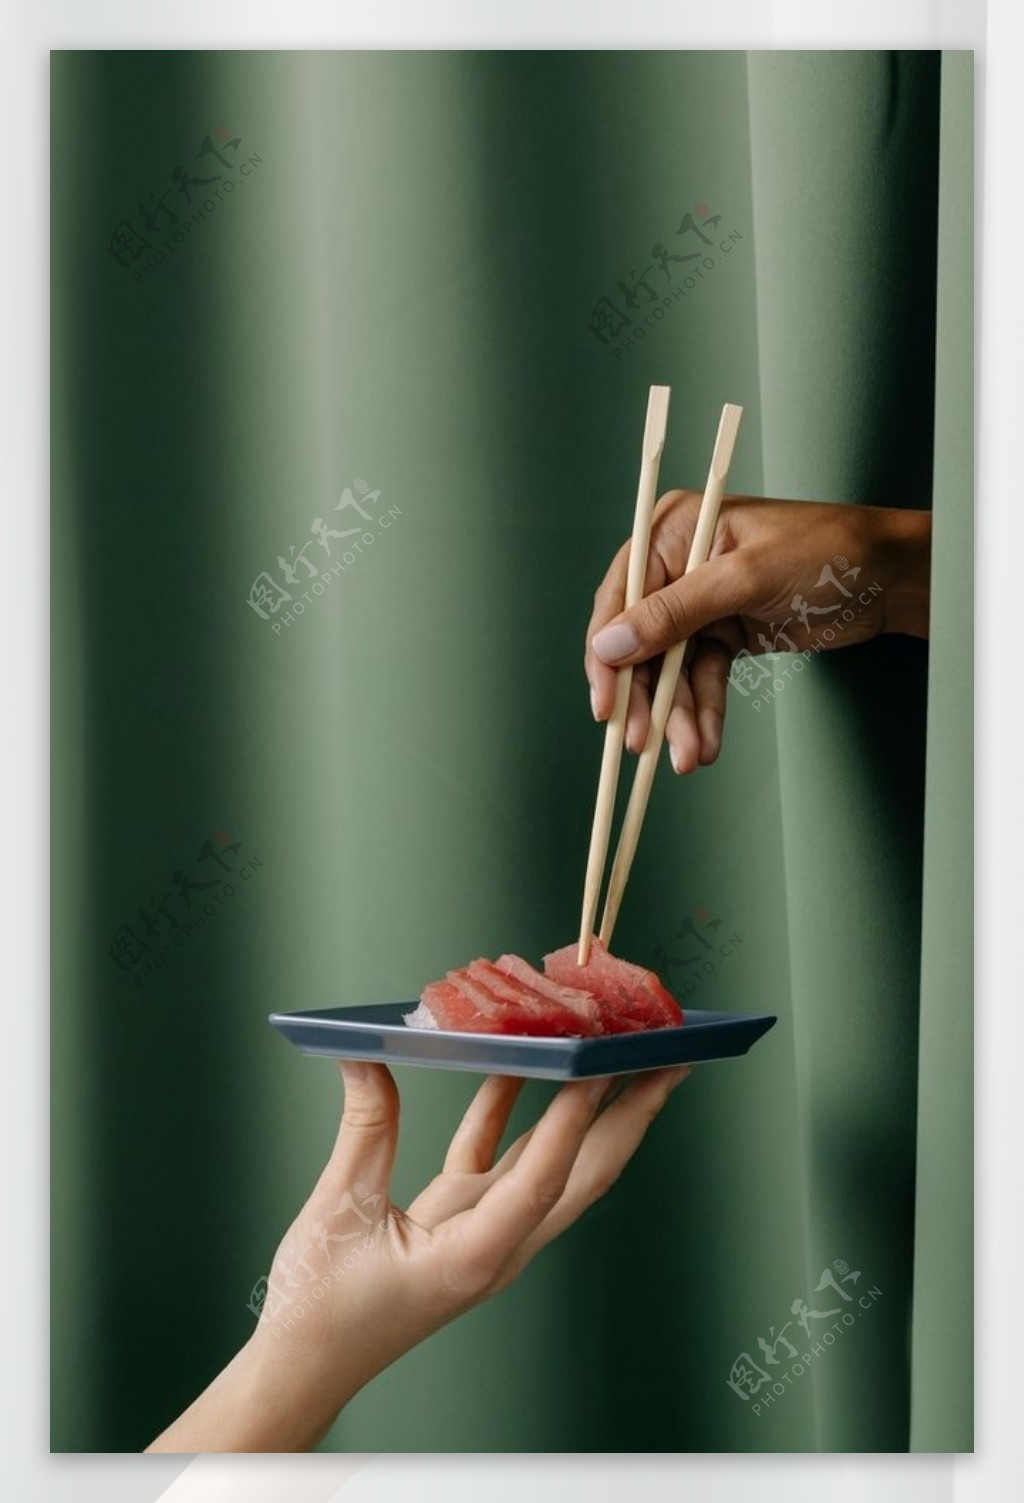 日式料理图片